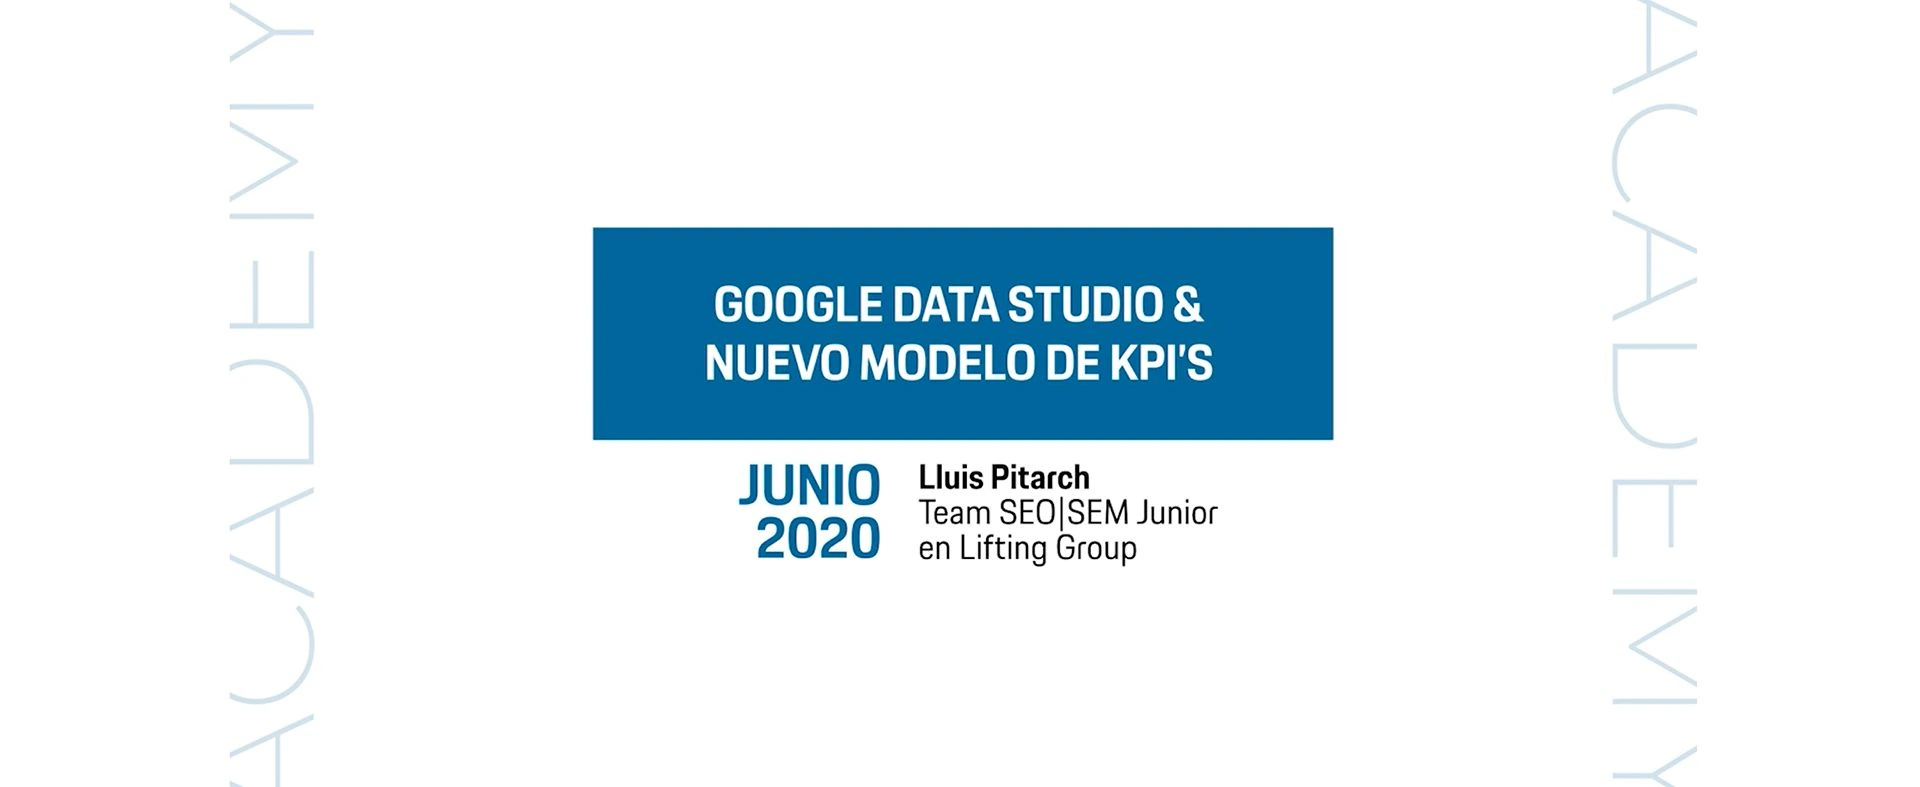 Nuevo Academy sobre la herramienta Google Data Studio y su aplicación en el nuevo modelo de KPI’s de Lifting Group